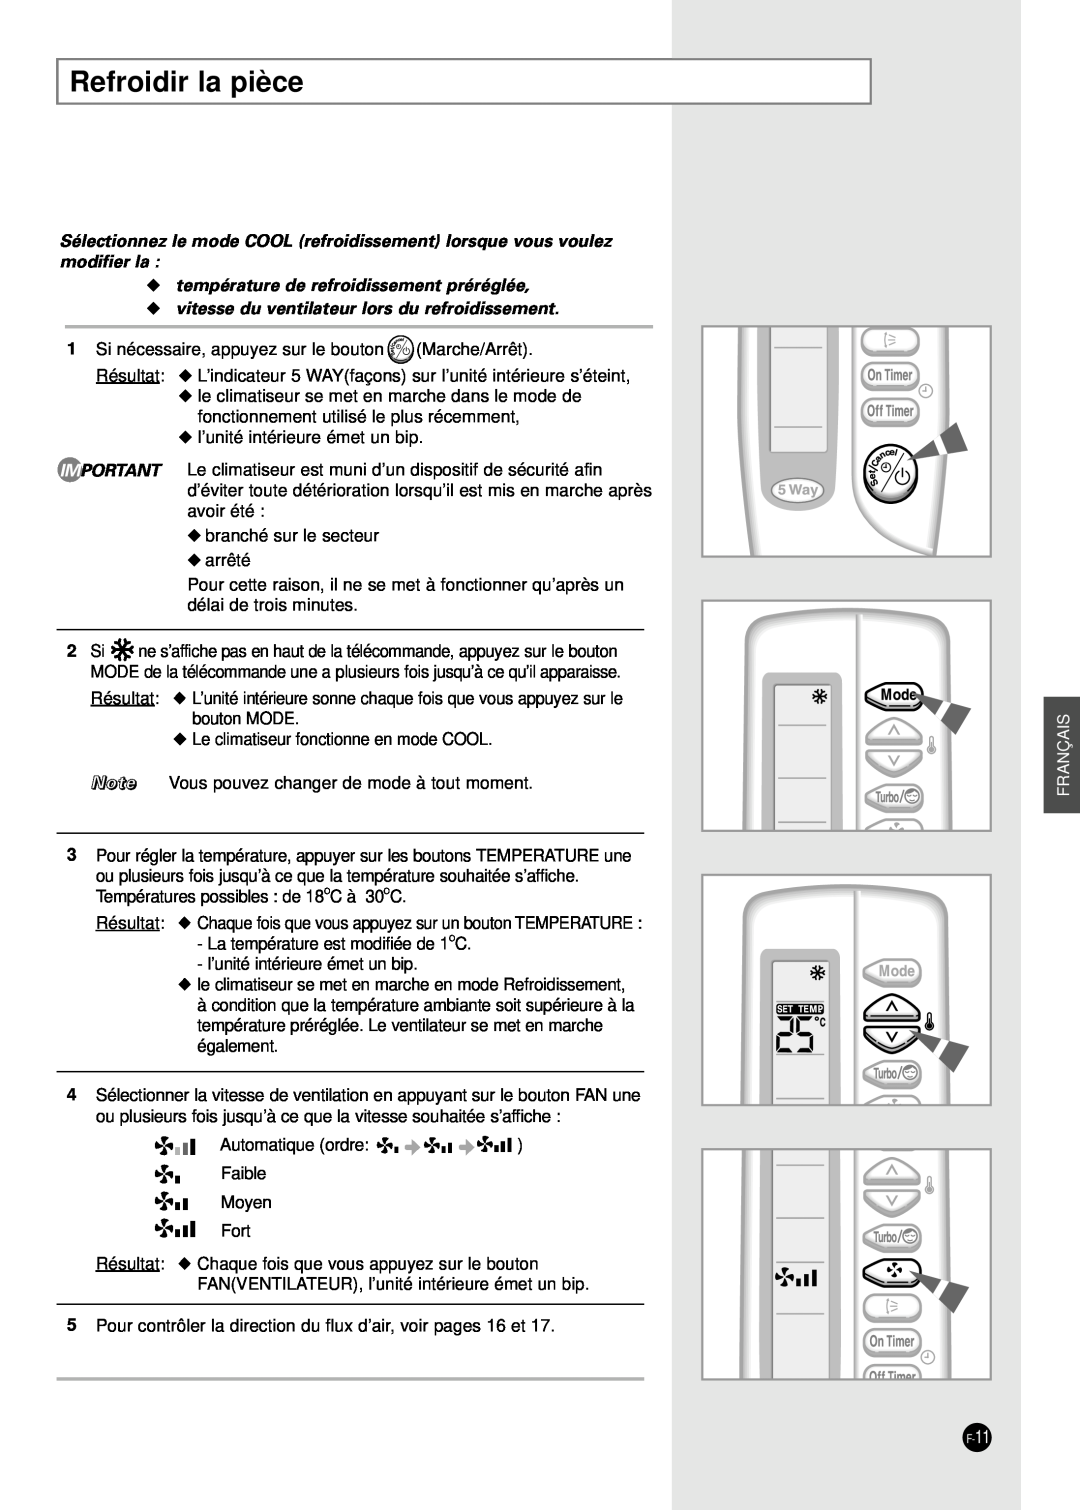 Samsung AD24B1(B2)(C1)(C2)E12 manuel dutilisation Refroidir la pièce, température de refroidissement préréglée, Français 